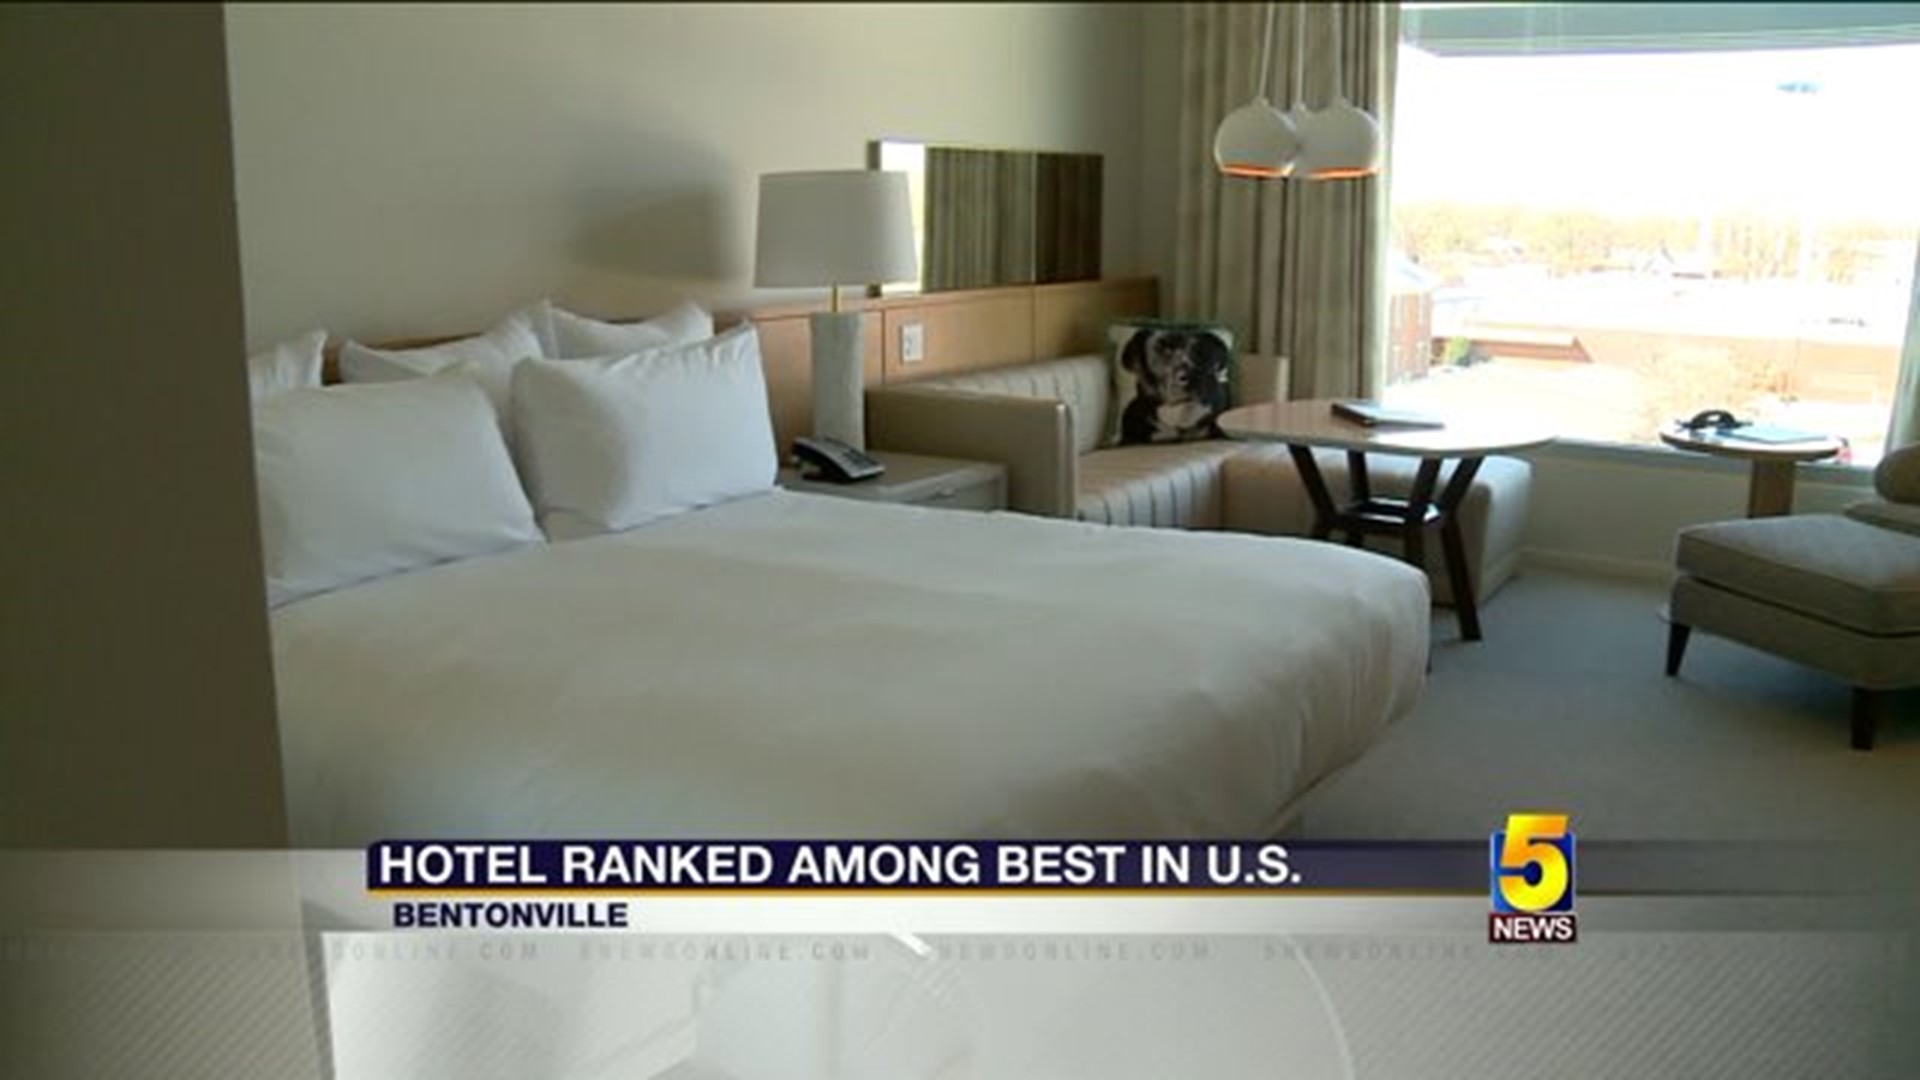 Bentonville Hotel Among Best In U.S.